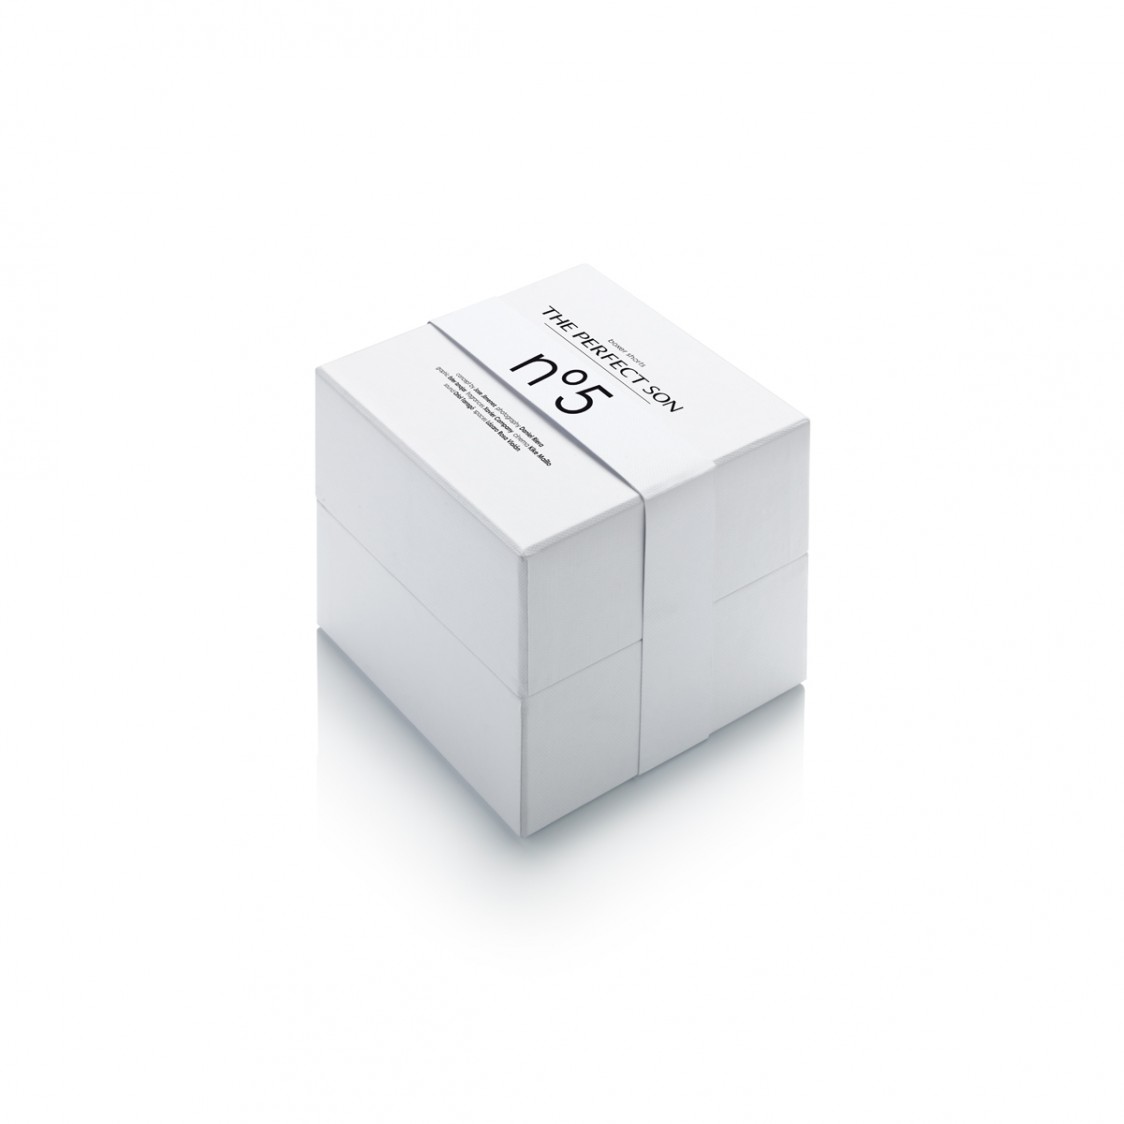 Nº5 caja cerrada tipo cubo con calzoncillo esencial para hombre